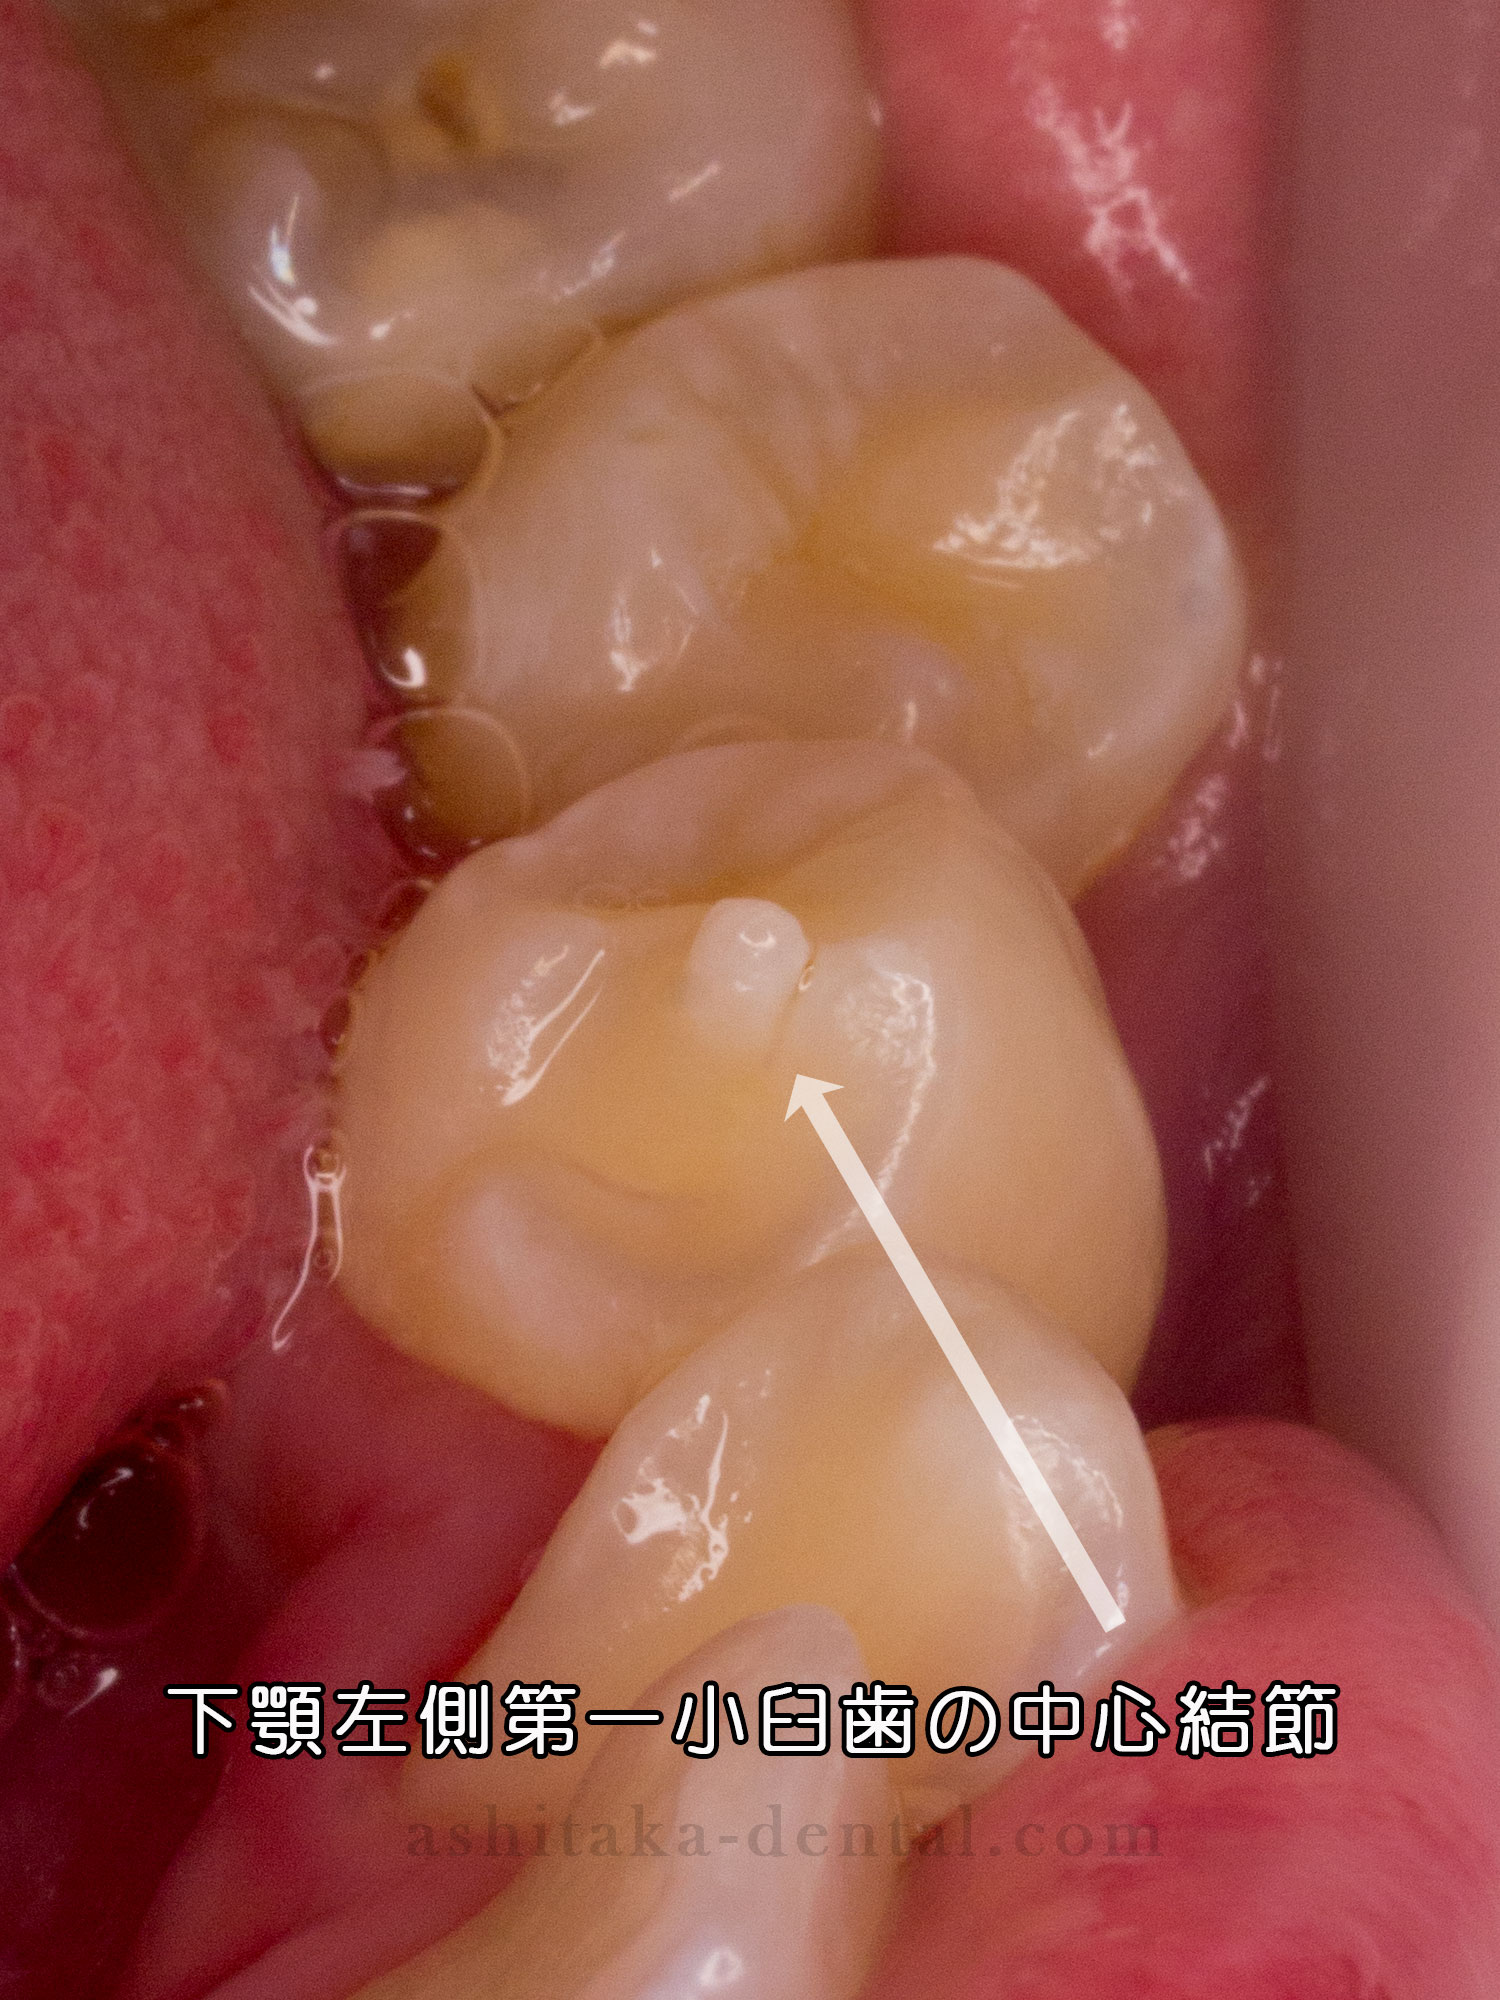 生えてきた大人の歯にツノのようなものがある 中心結節 あしたか歯科医院